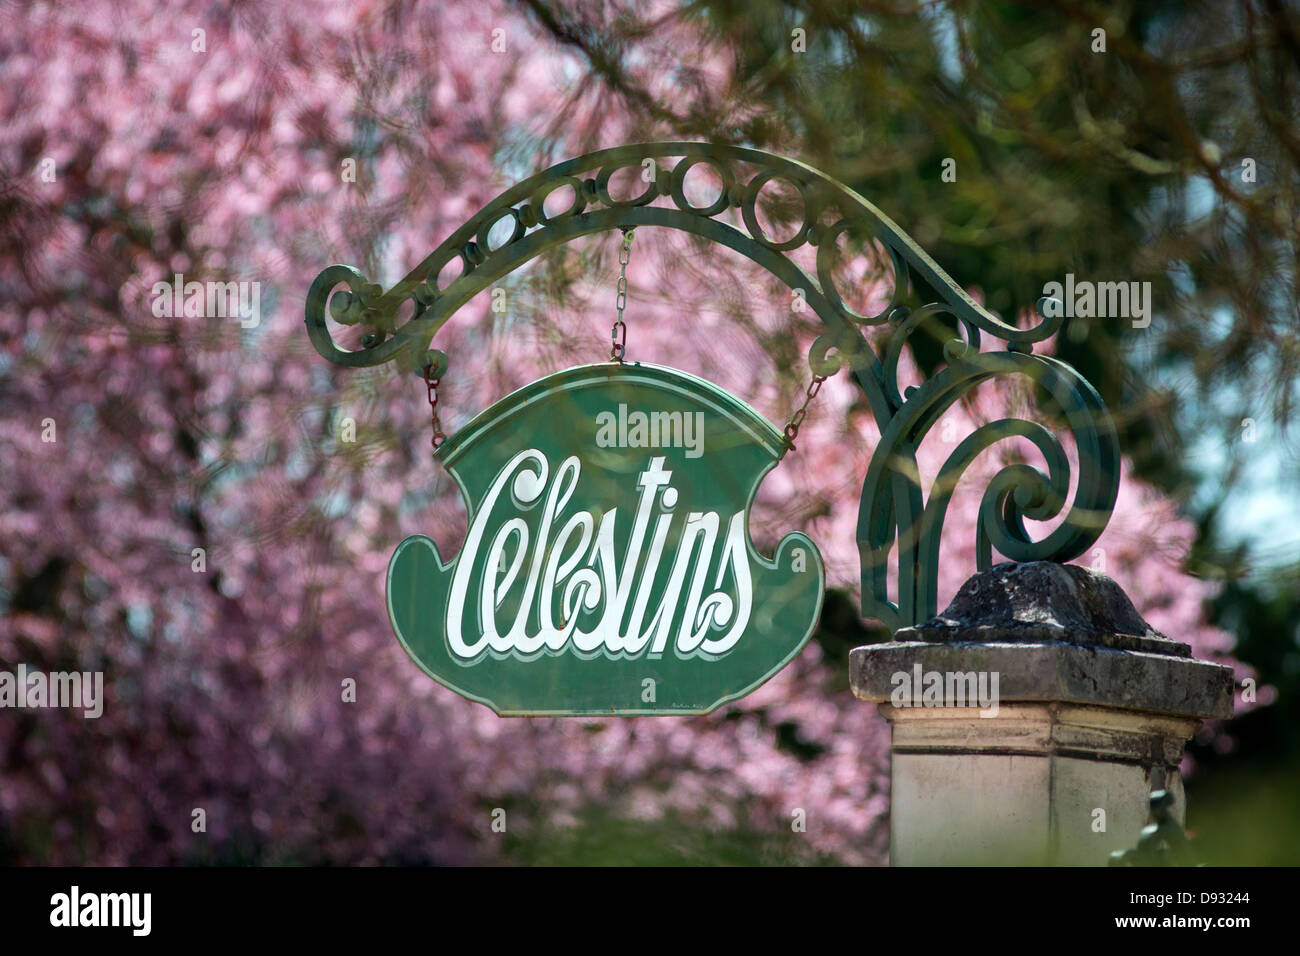 De style rétro un signe indiquant le "Célestins", source thermale de Vichy (France). Enseigne rétro de la source des Célestins. Banque D'Images